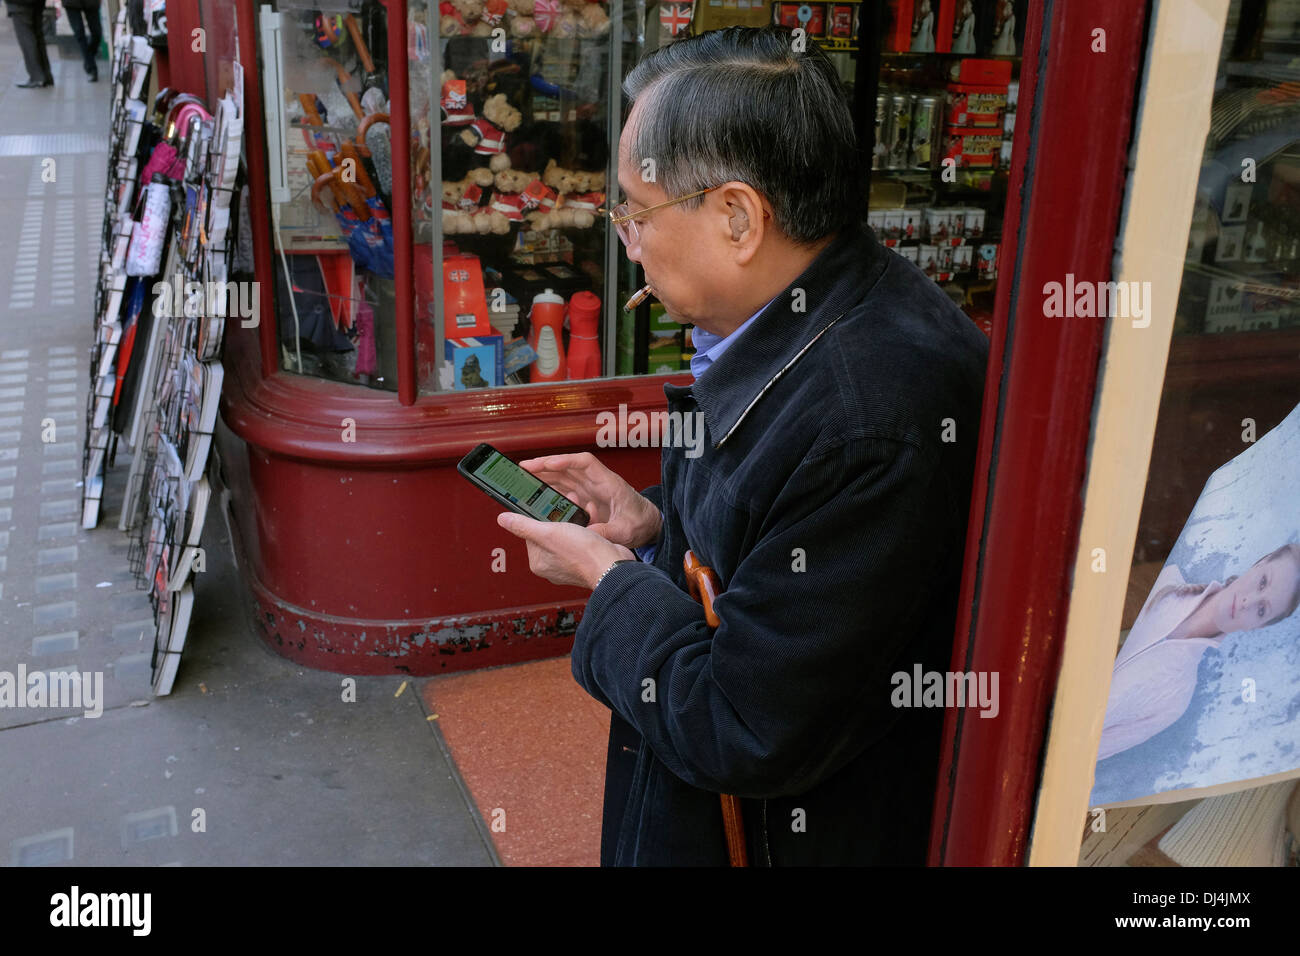 Anziani uomo cinese utilizza lo smartphone, Piccadilly, Londra, Regno Unito Foto Stock